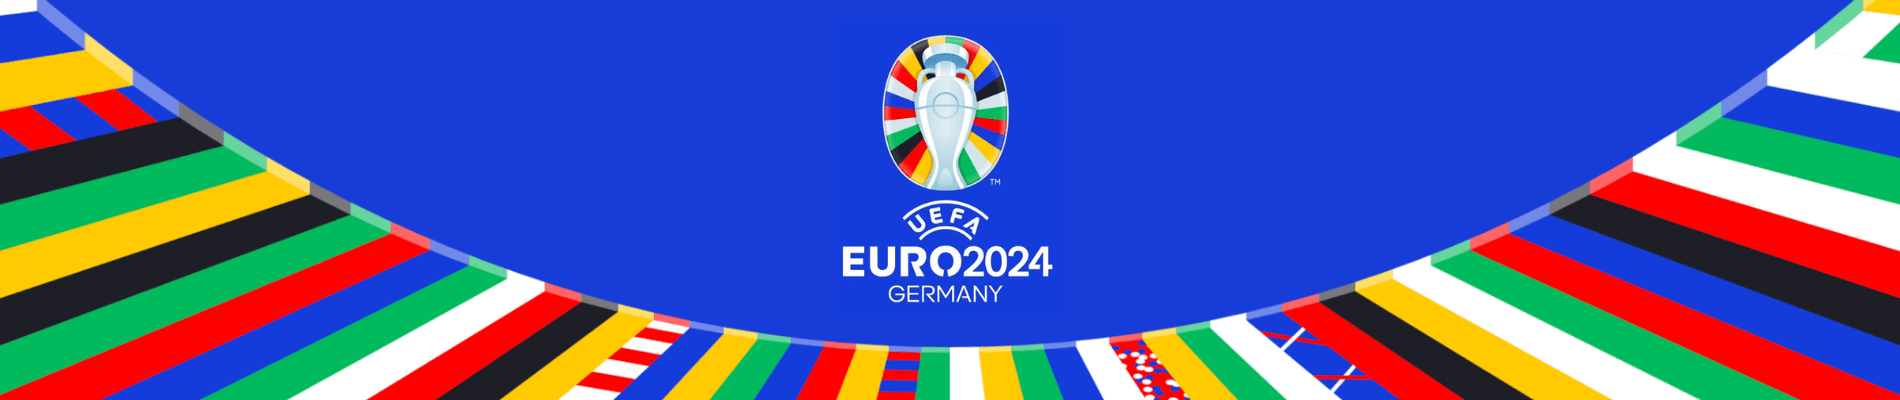 maillots euro 2024